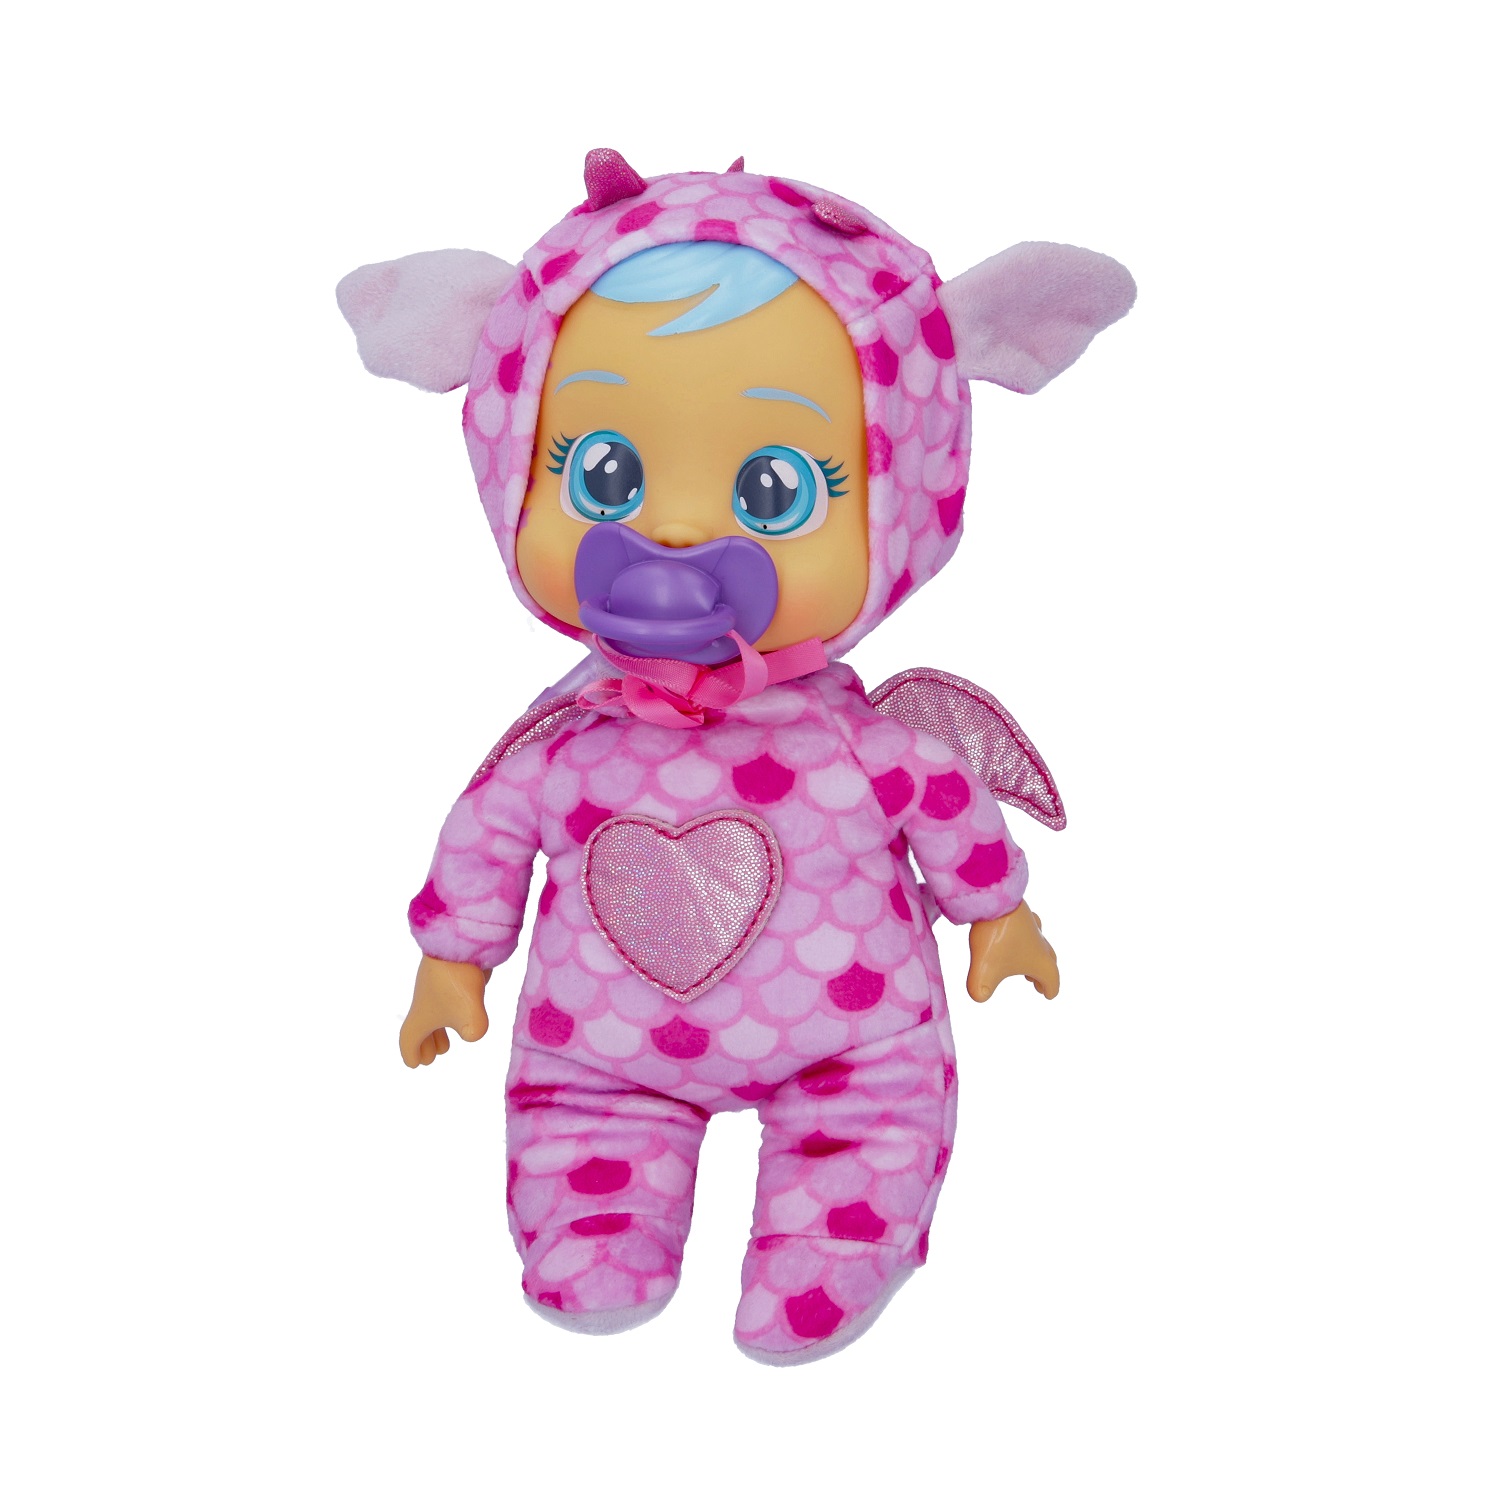 Кукла Cry Babies Край Бебис Бруни Малышка интерактивная плачущая 41039 кукла cry babies bff стелла 904330